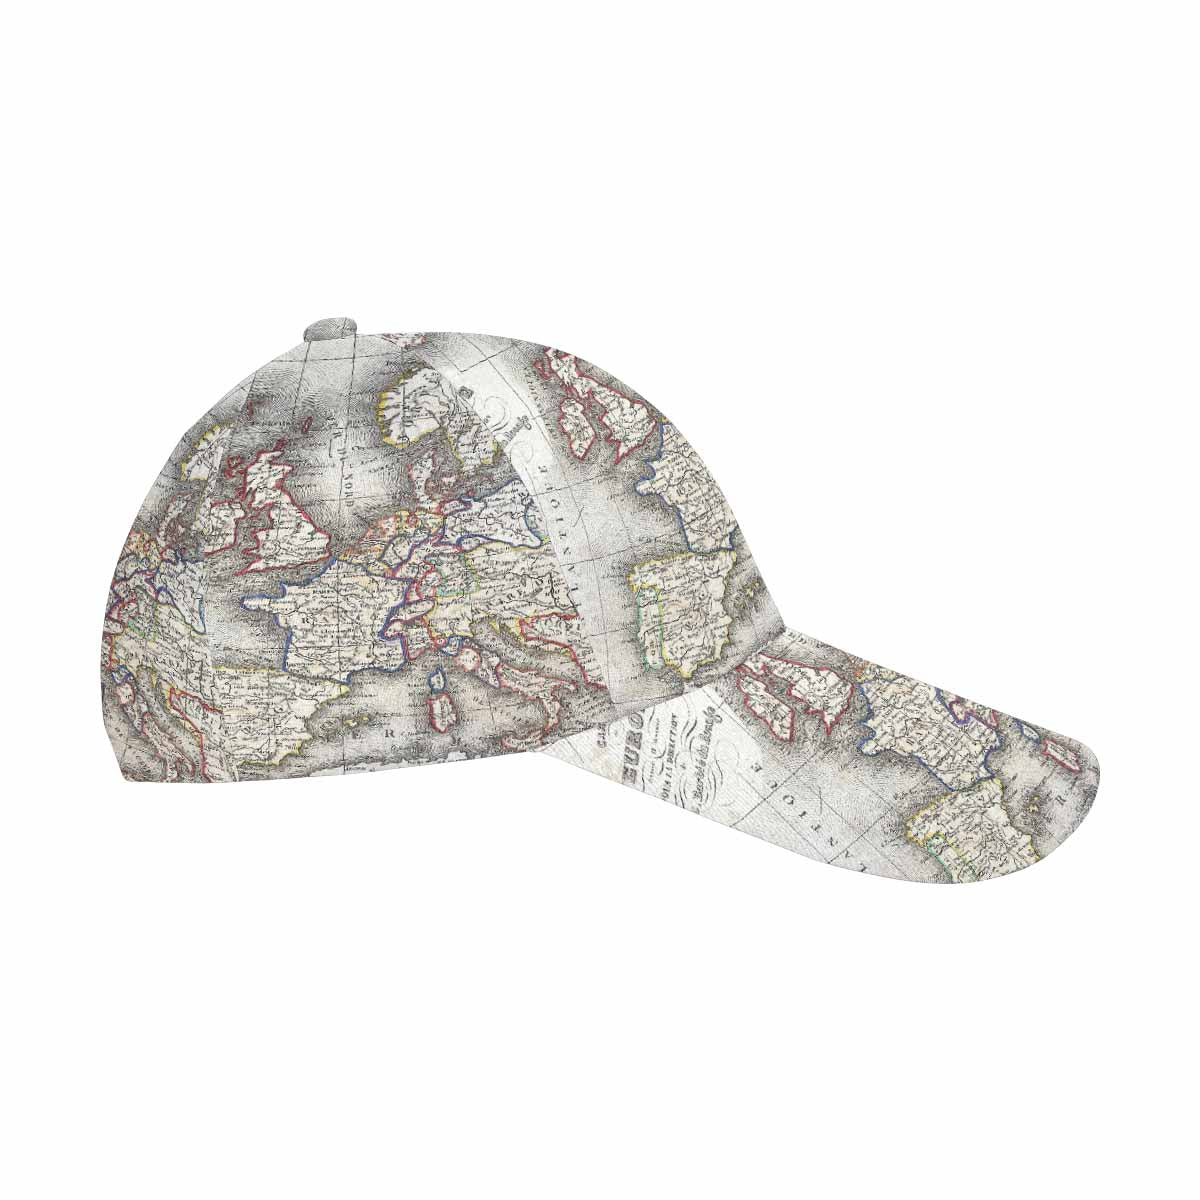 Antique Map design dad cap, trucker hat, Design 36